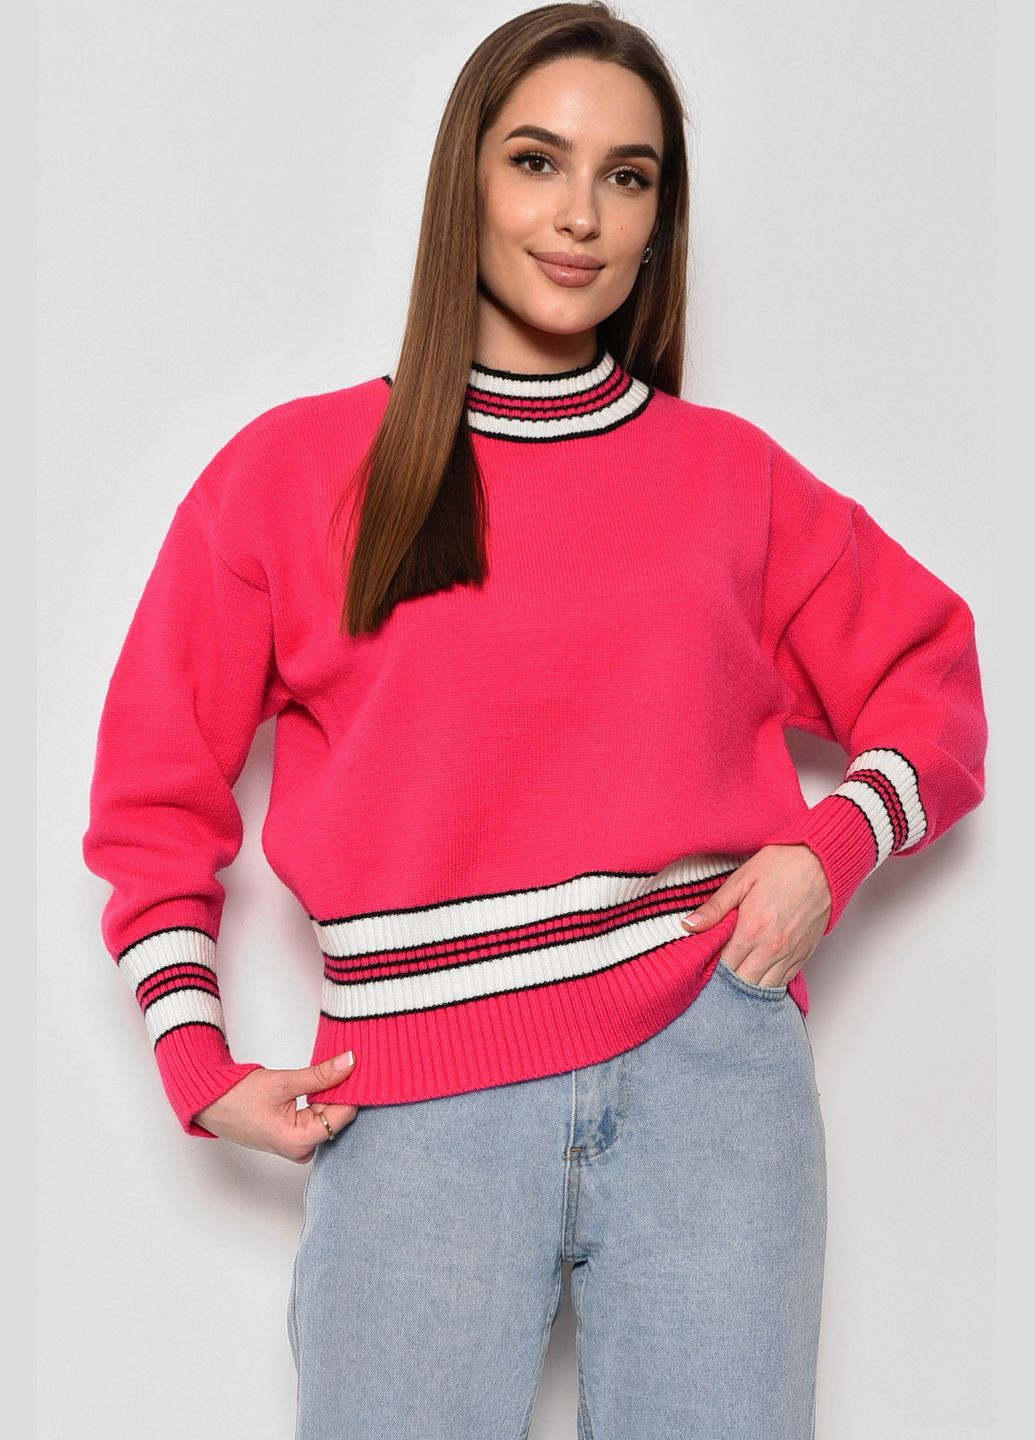 Розовый зимний свитер женский кашемировый розового цвета пуловер Let's Shop